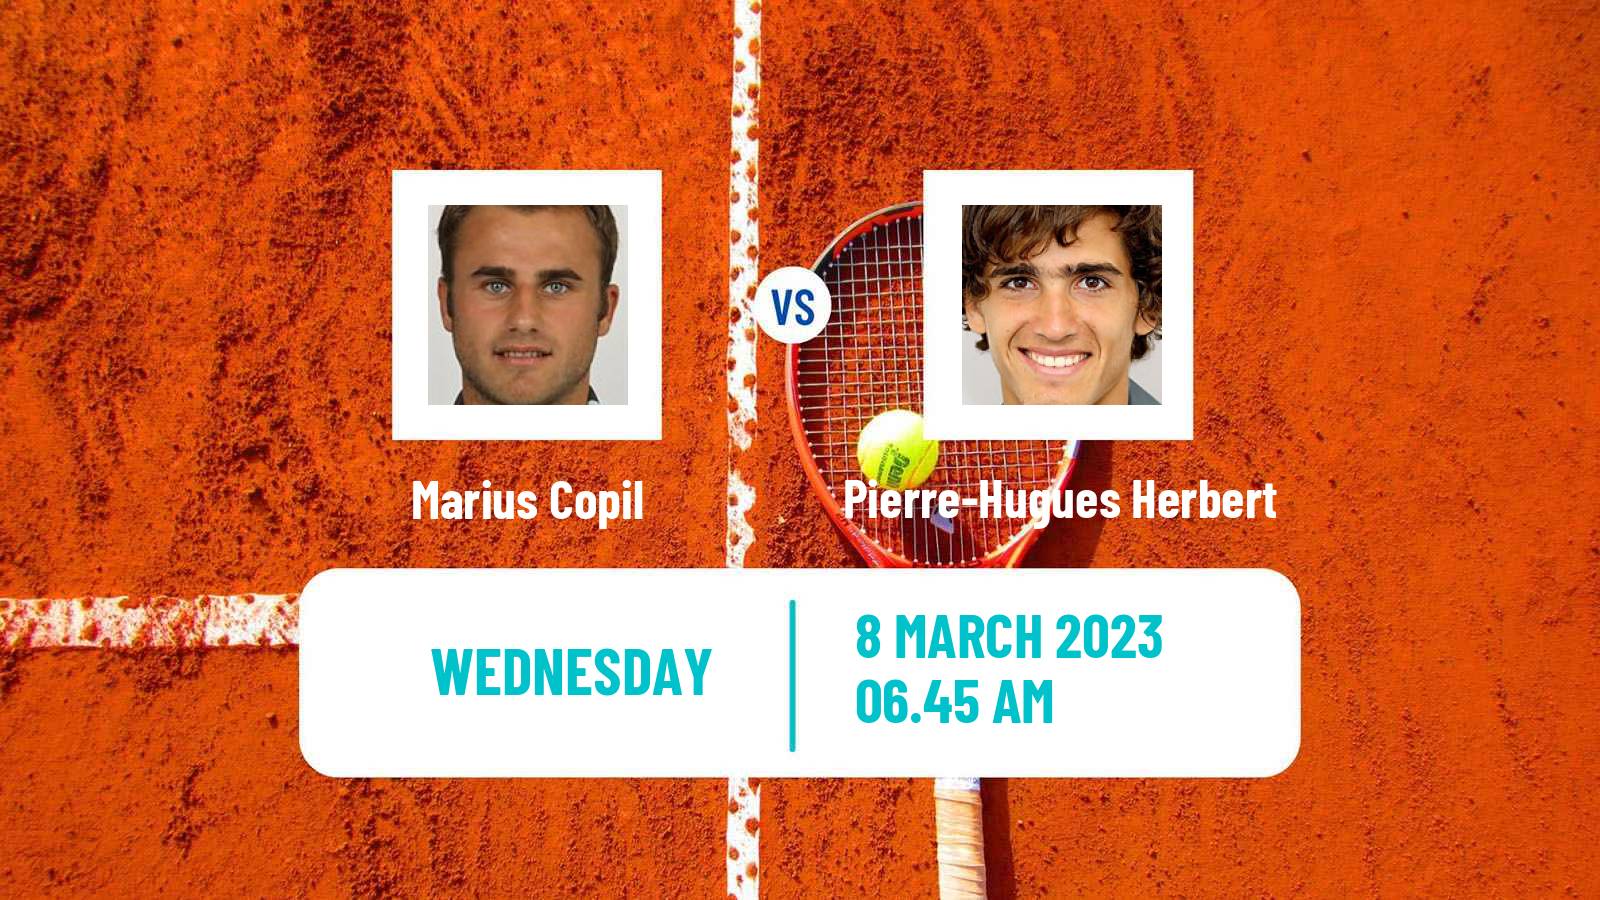 Tennis ATP Challenger Marius Copil - Pierre-Hugues Herbert